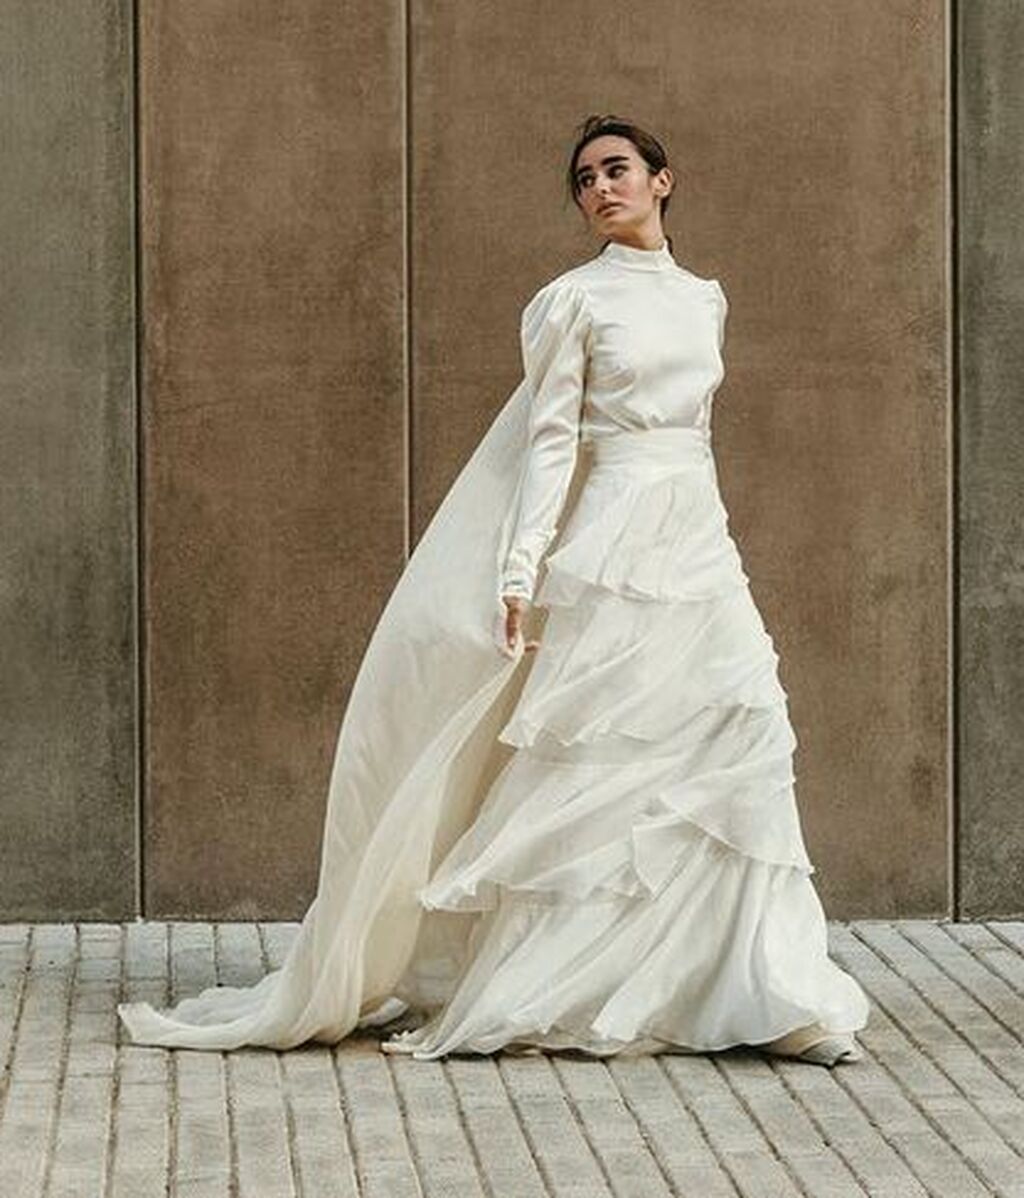 Del Norte granizo Maletín Los mejores diseñadores de vestidos de novia - Divinity